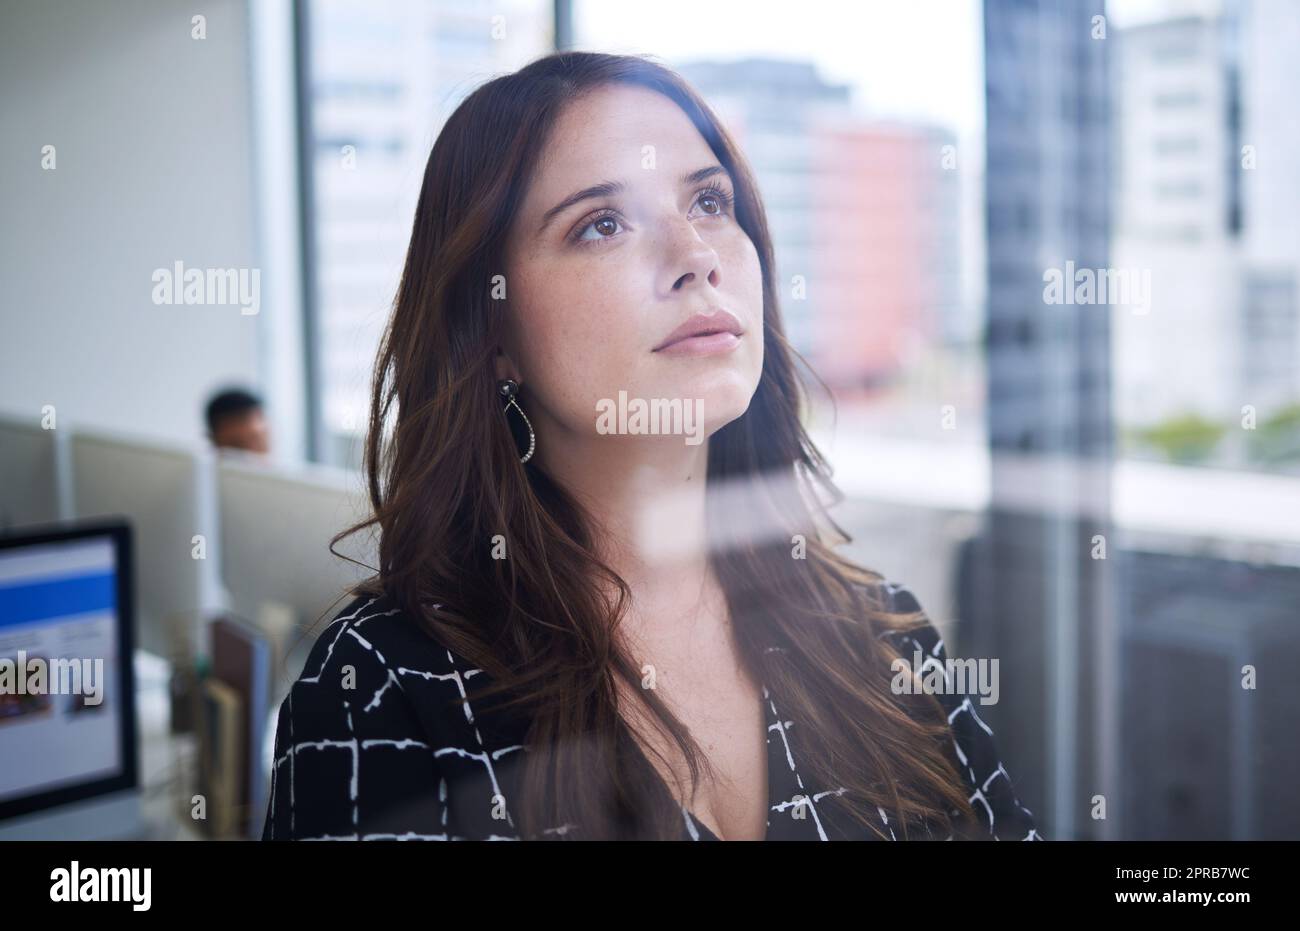 Ayez le courage de poursuivre vos rêves. Une jeune femme d'affaires regardant réfléchie tout en se tenant debout à une fenêtre dans un bureau. Banque D'Images